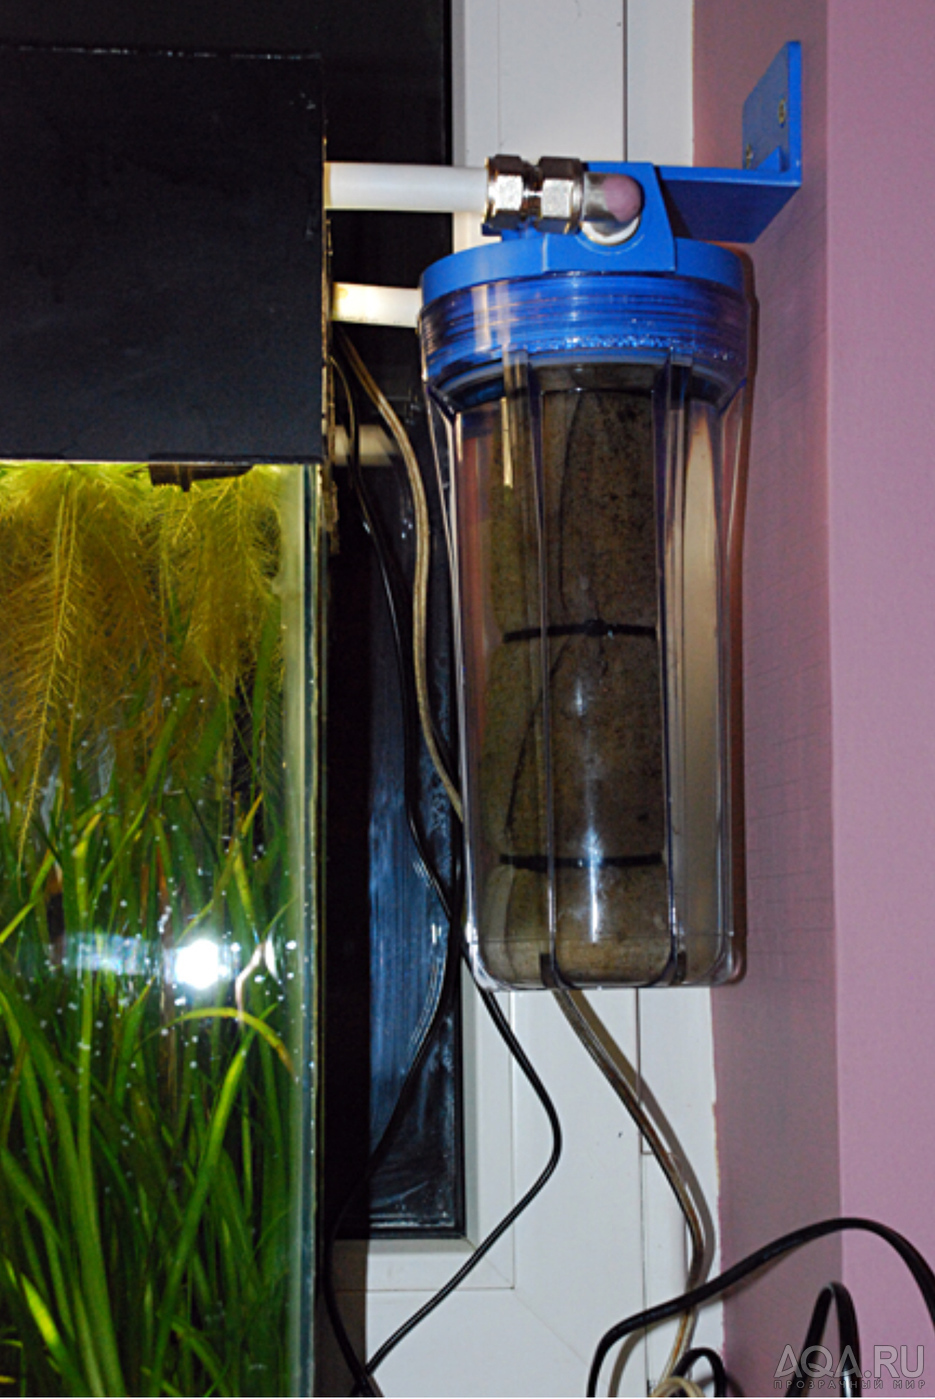 Фильтр очистки аквариума. Фильтр аквариумный внешний. Фильтр для очистки аквариума. Водоочиститель для аквариума. Самодельный фильтр для аквариума.